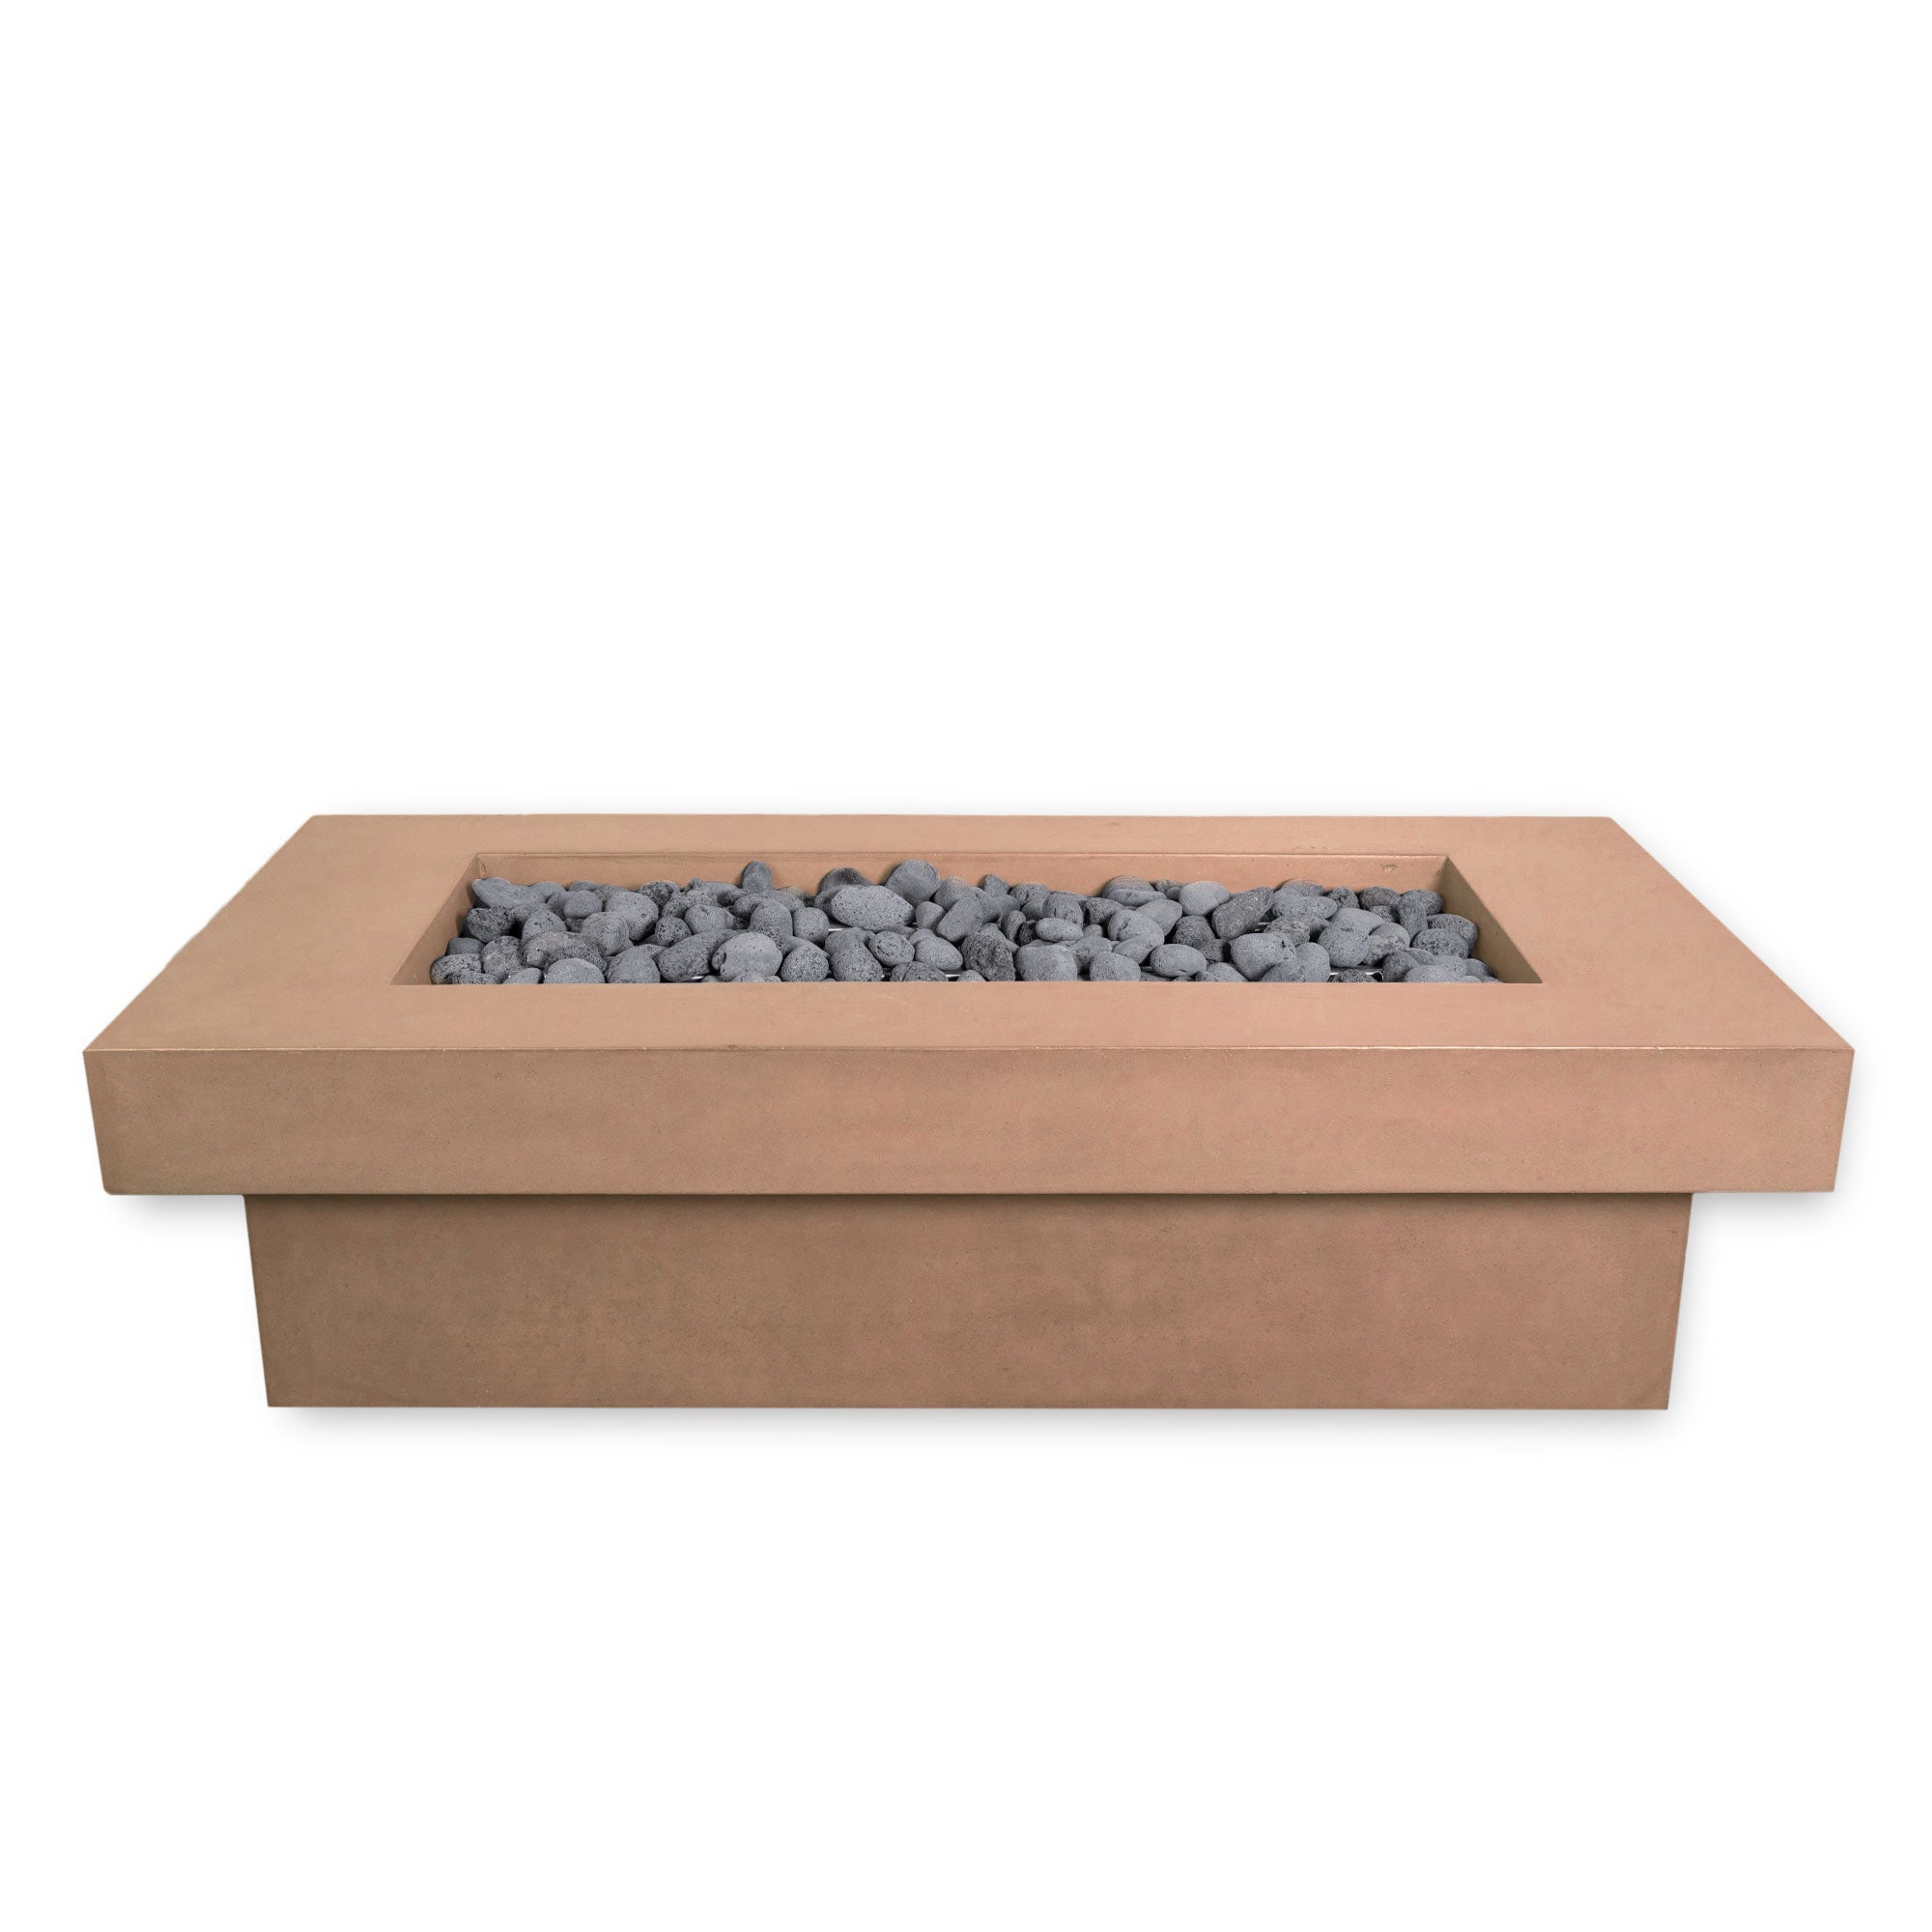 MESA 3 - 80" Long XL Premium Rectangular Cement Fire Pit Table Bowl GFRC Square Concrete